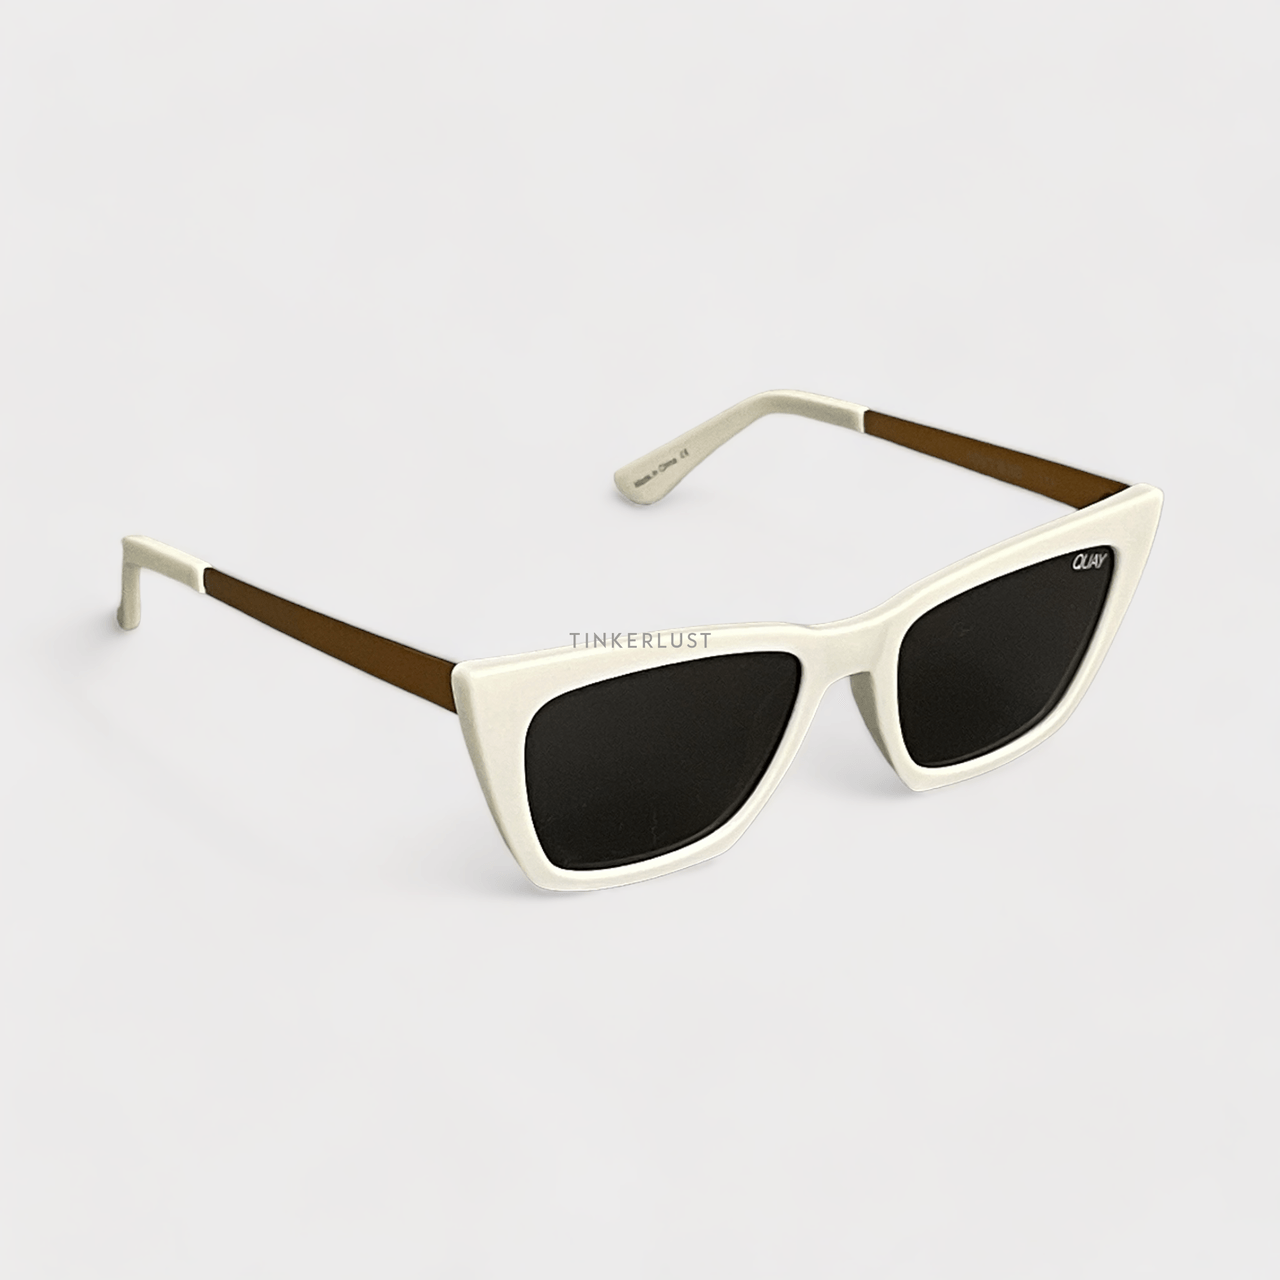 Quay Australia x Desi Perkins Gold & White Sunglasses